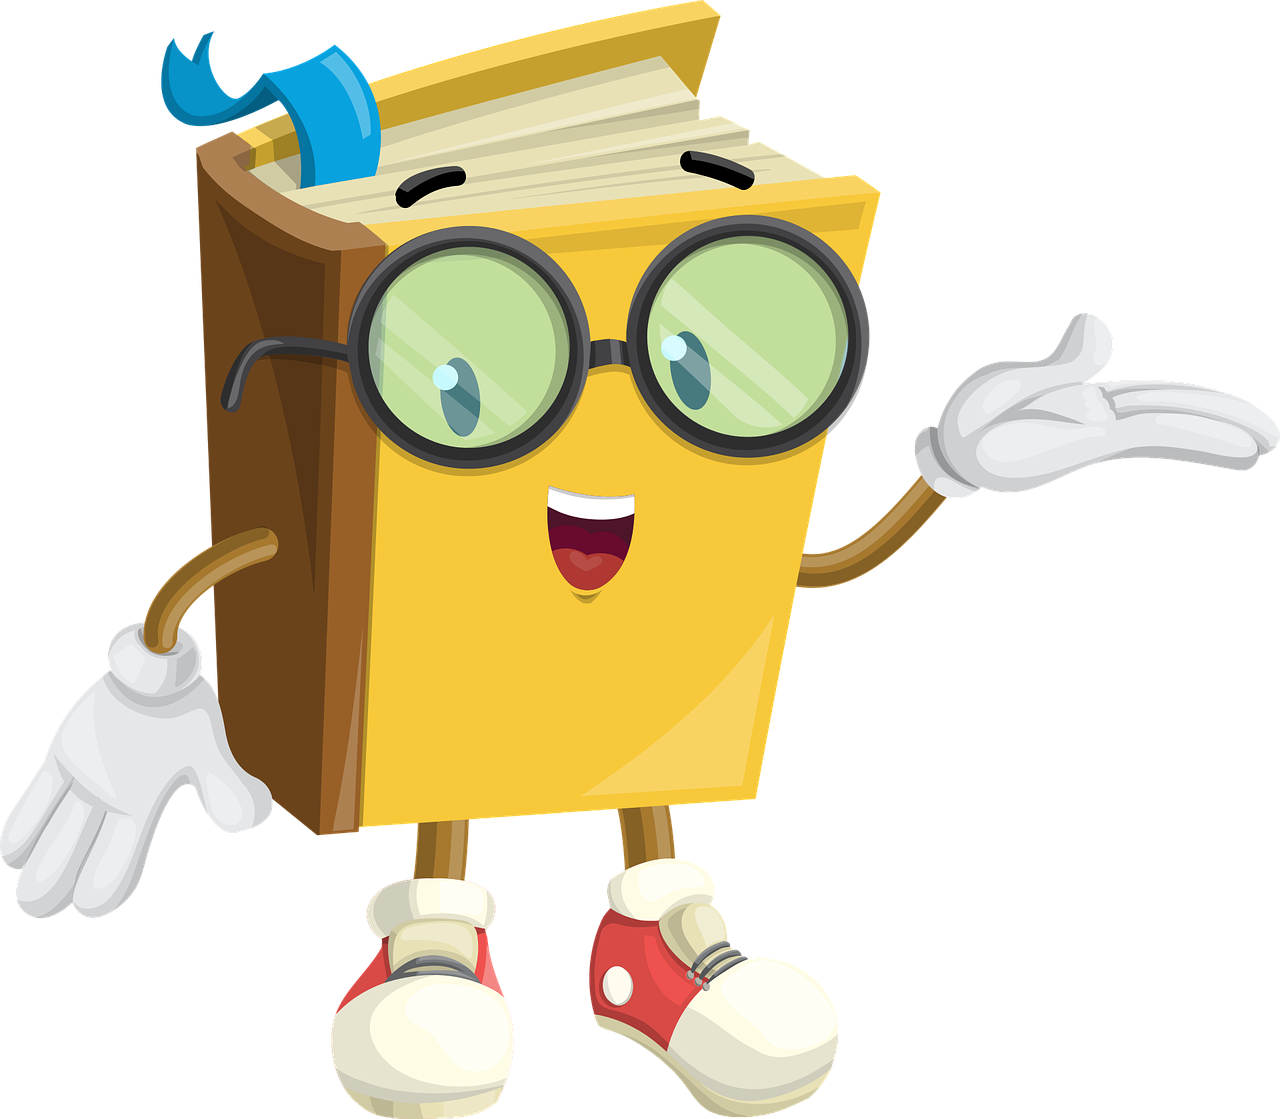 es un libro  de color amarillo que está de pie hablando, tiene gafas, dos manos y dos piernas. De su interior sale un marcapáginas de color azul